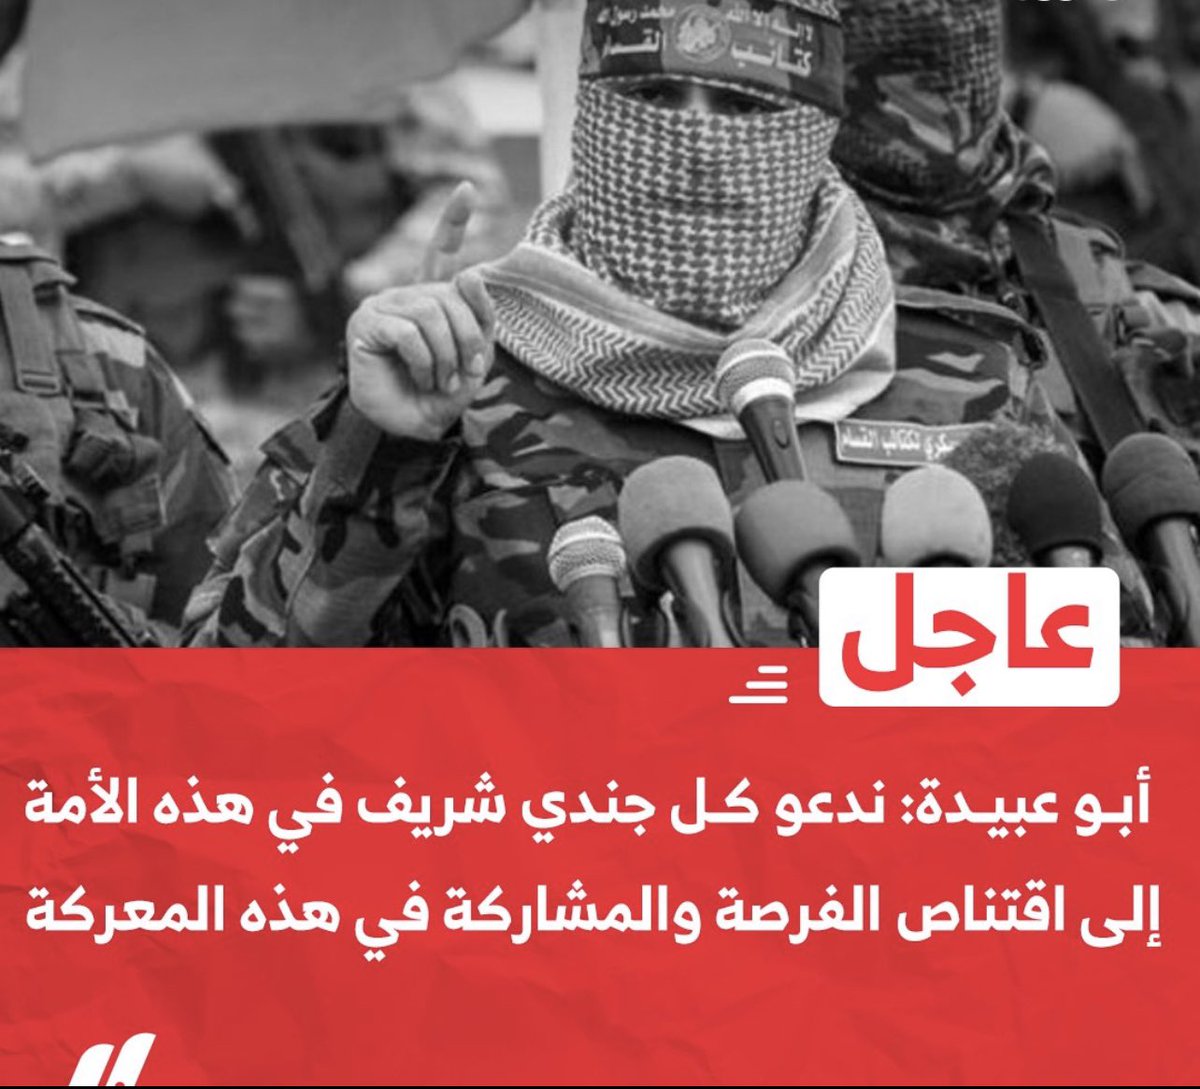 #عاجل| #أبو_عبيدة: ندعو كل جندي ومقاتل شريف في هذه الأمة إلى اقتناص الفرصة والمشاركة في هذه المعركة!